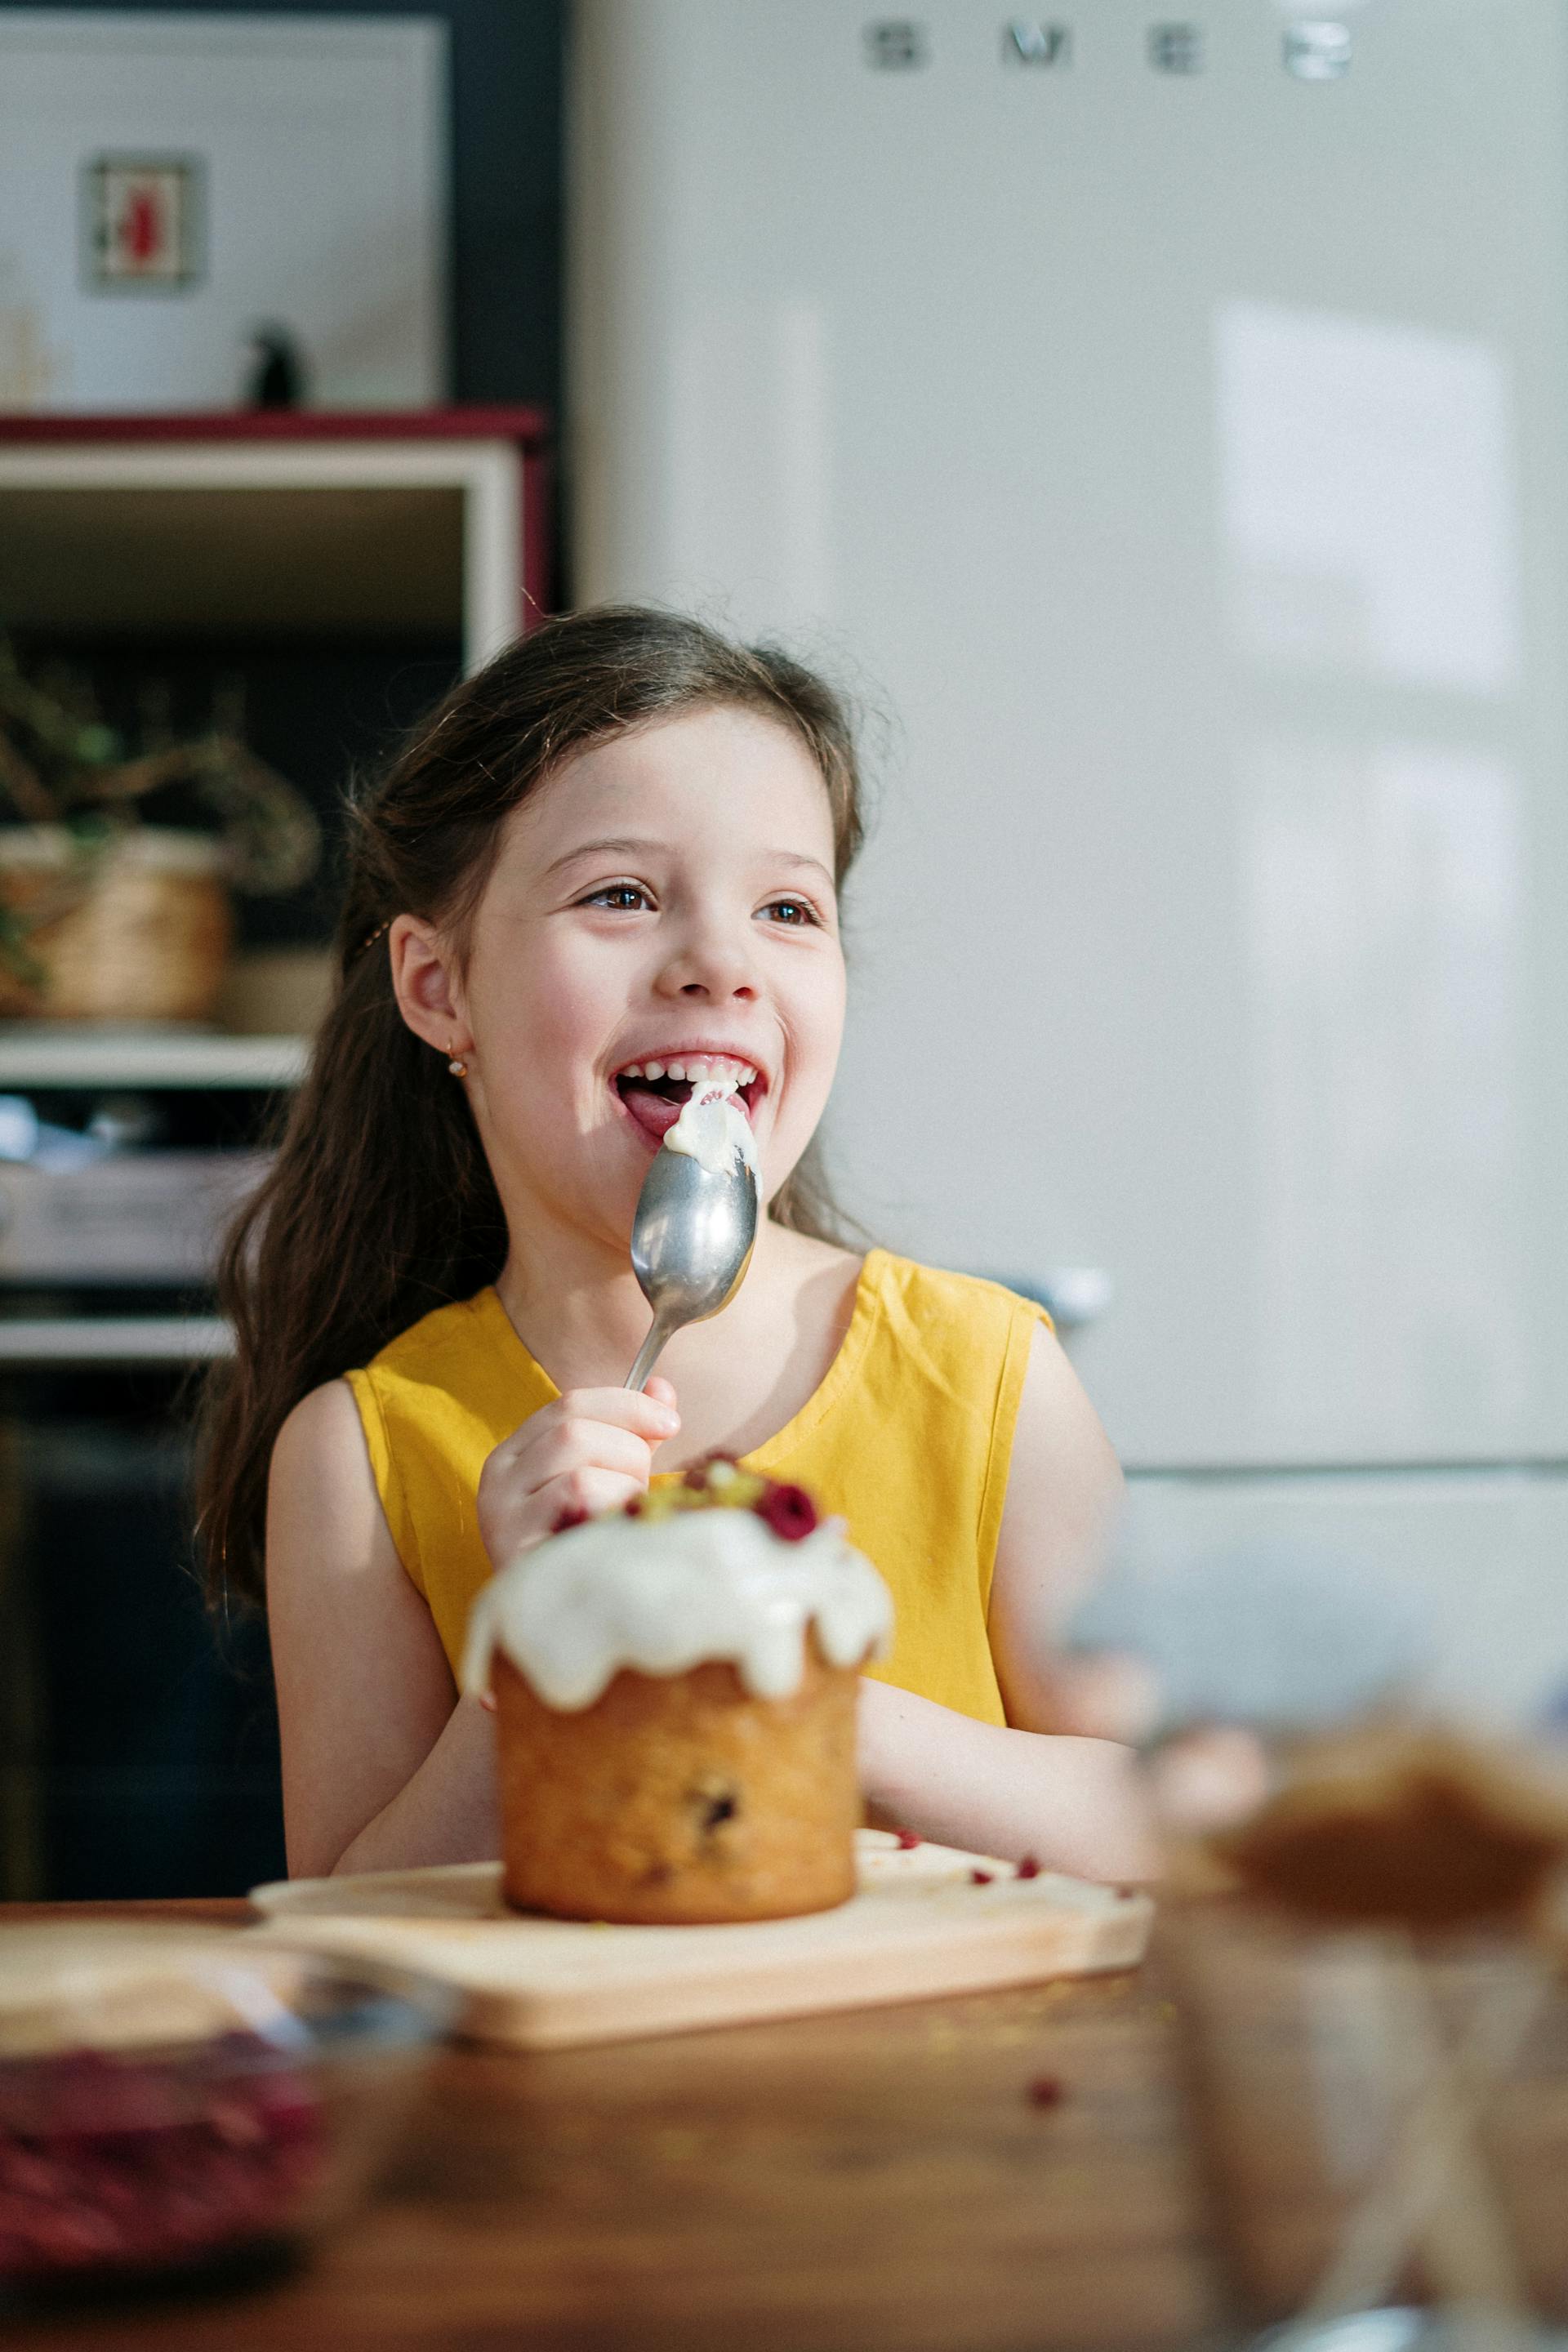 Une petite fille qui mange un gâteau | Source : Pexels